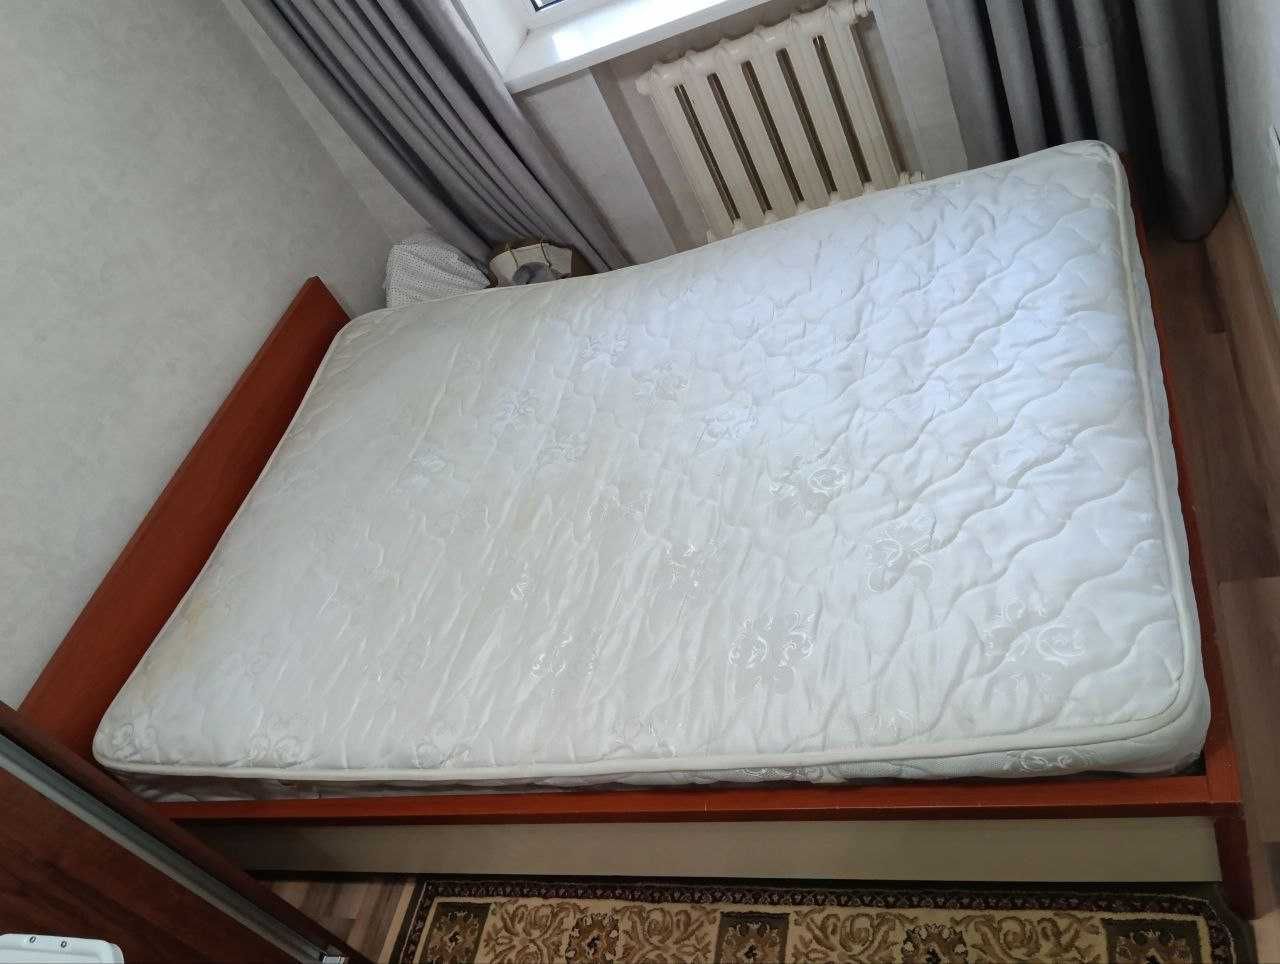 Продается 2-х спальная кровать, импортная, в отличном состоянии.